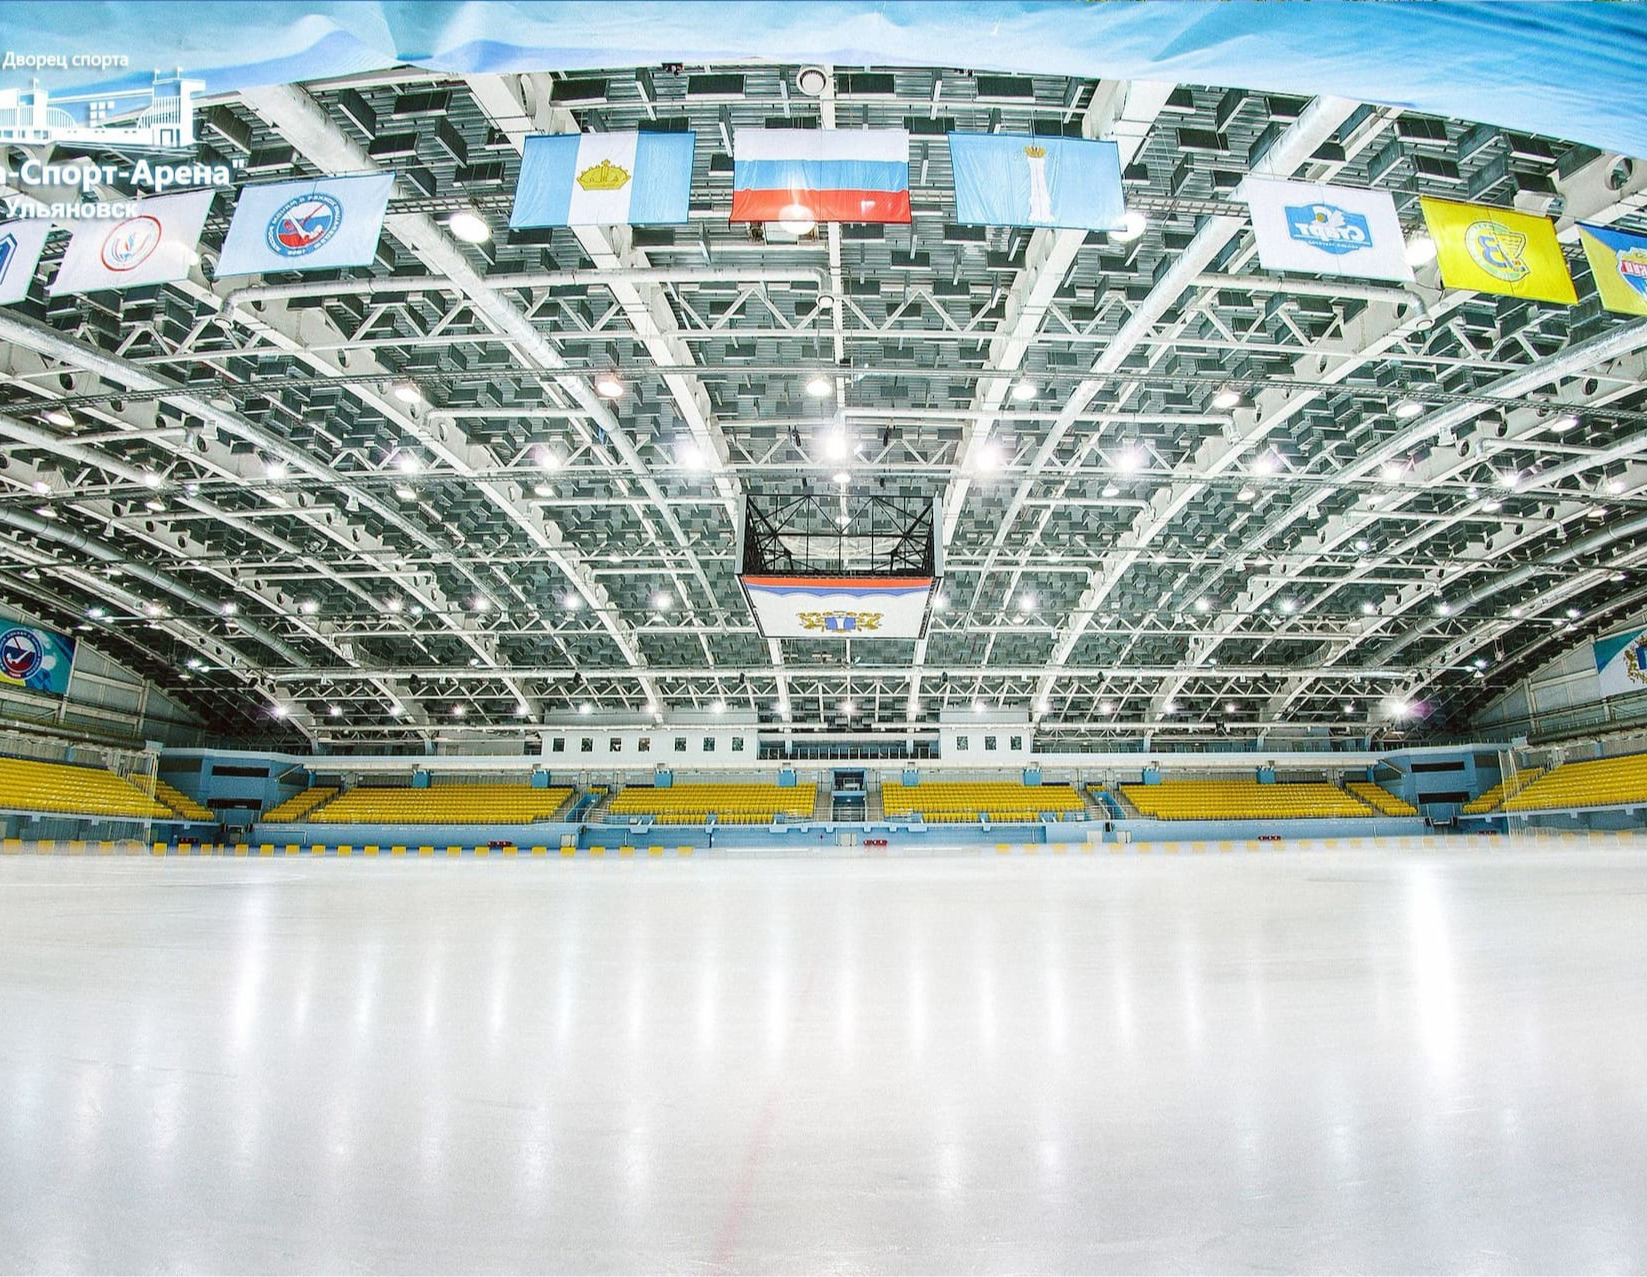 Волга-Спорт-Арена